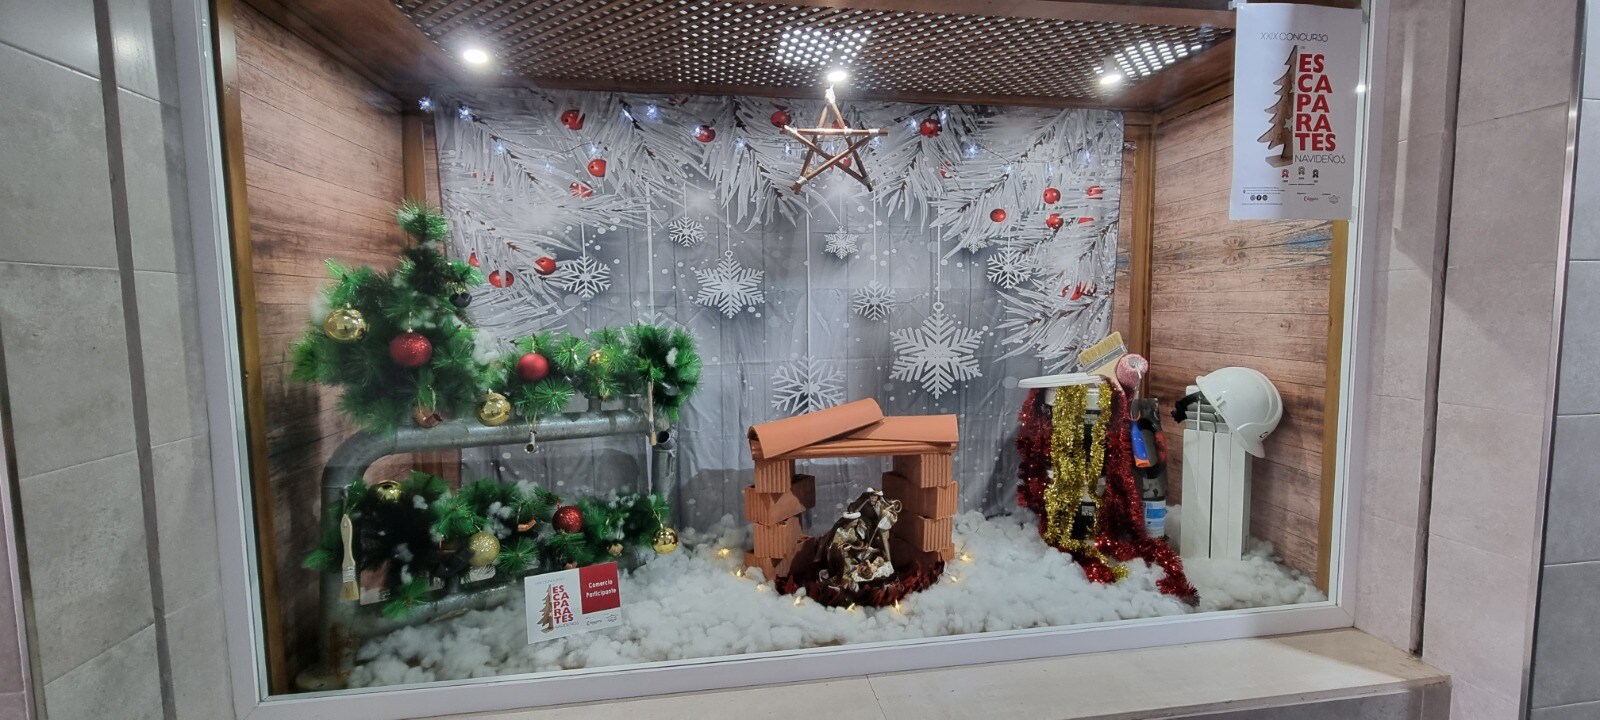 Una veintena de establecimientos optan al mejor escaparate navideño en Andújar